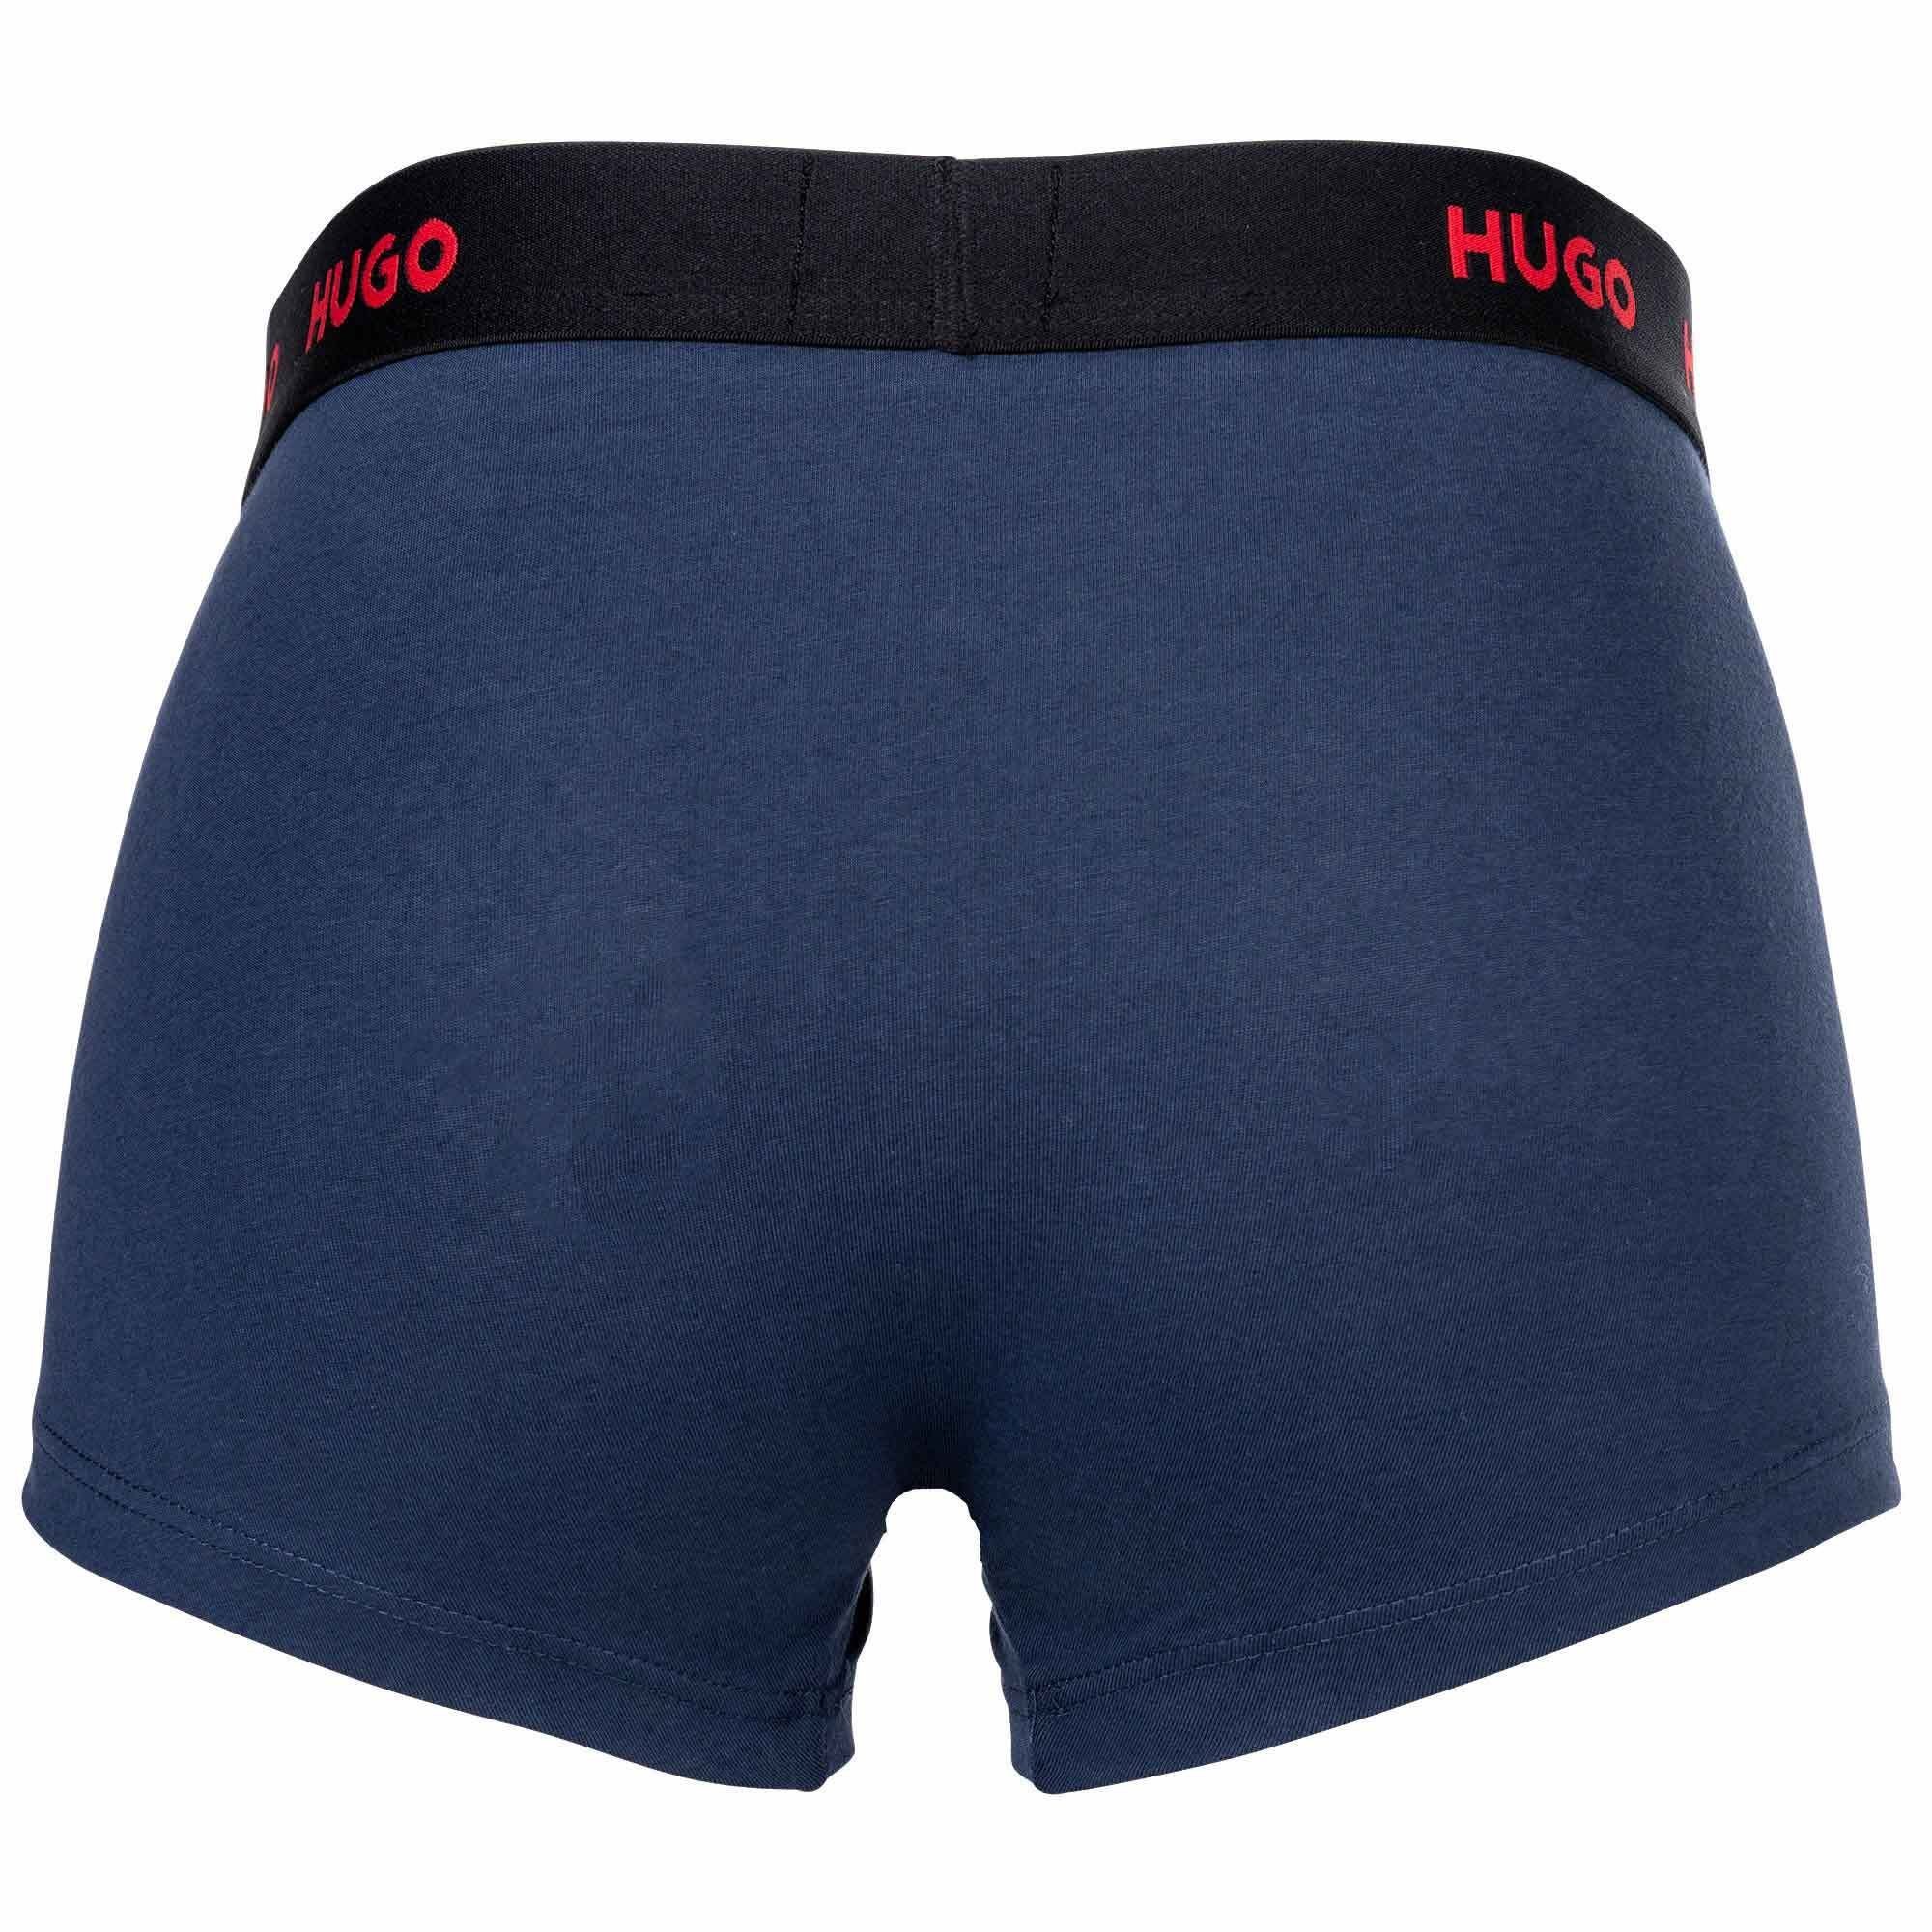 Boxer Shorts, 3er Pack Triplet Herren Trunks - HUGO Boxer Blau/Weiß